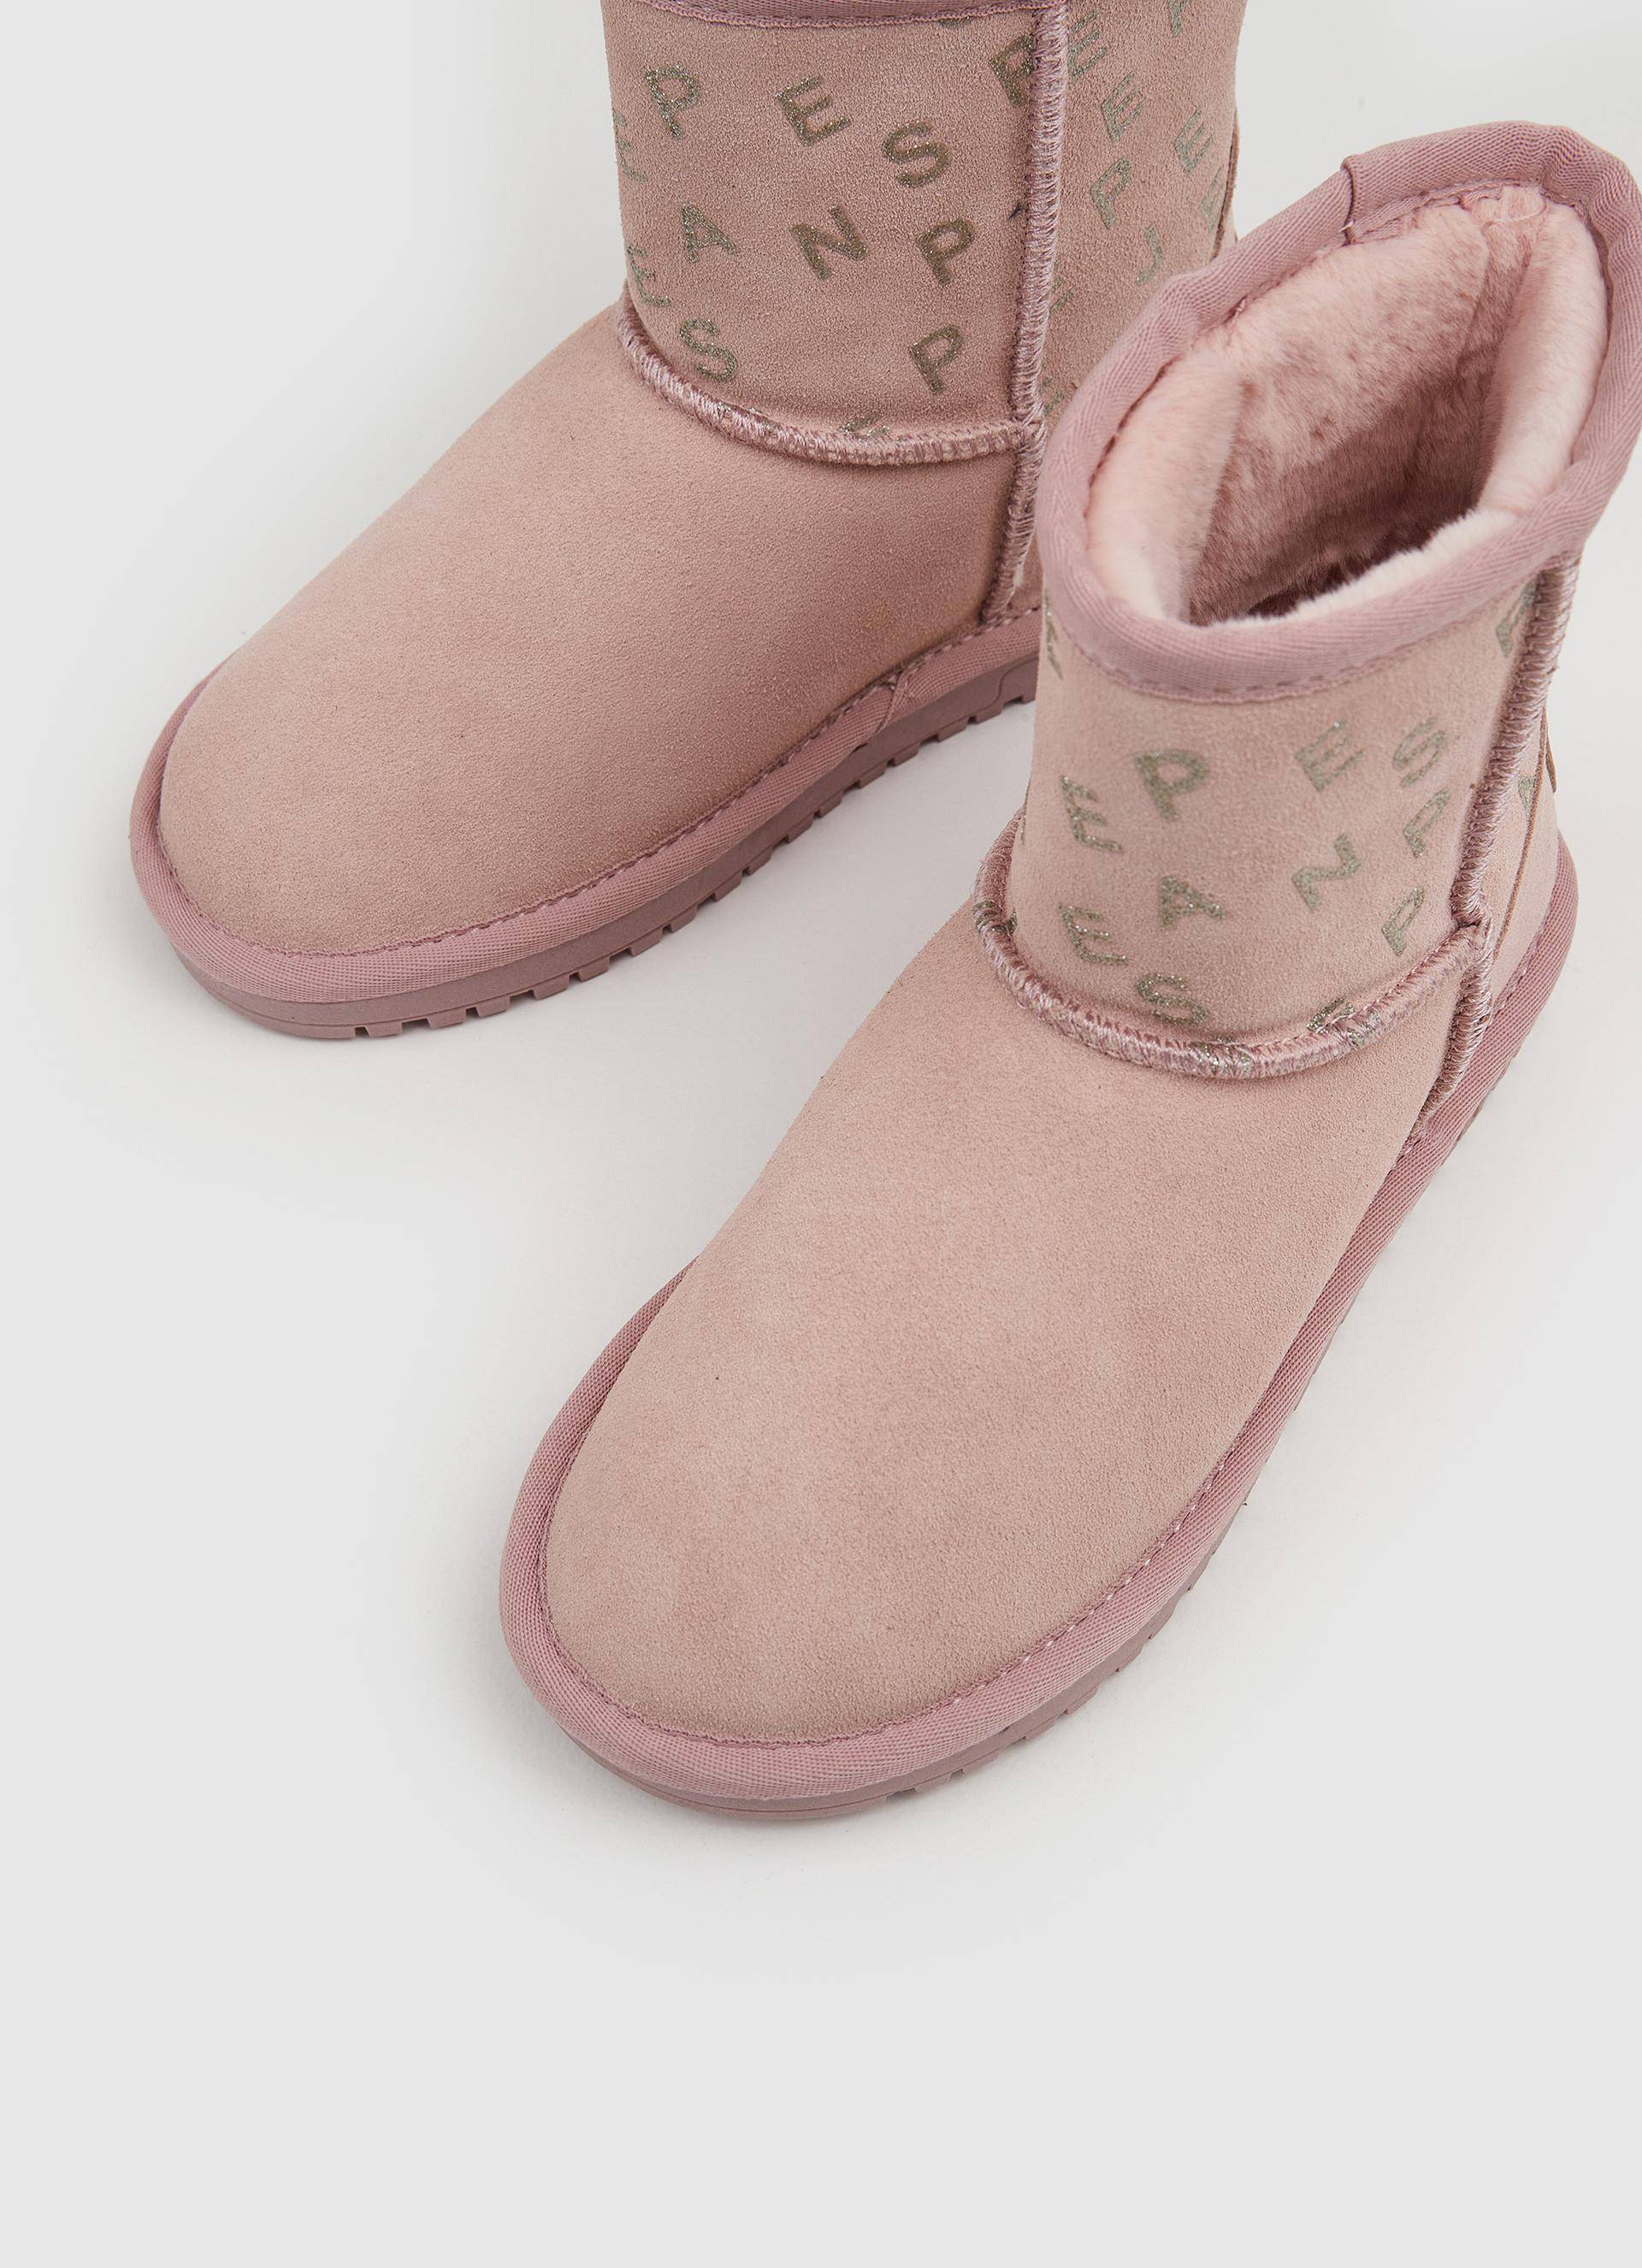 Детские ботинки из овчины (угги) Pepe Jeans London (DISS GIRL LOGY PGS50180), розовые, цвет розовый, размер 32 - фото 7